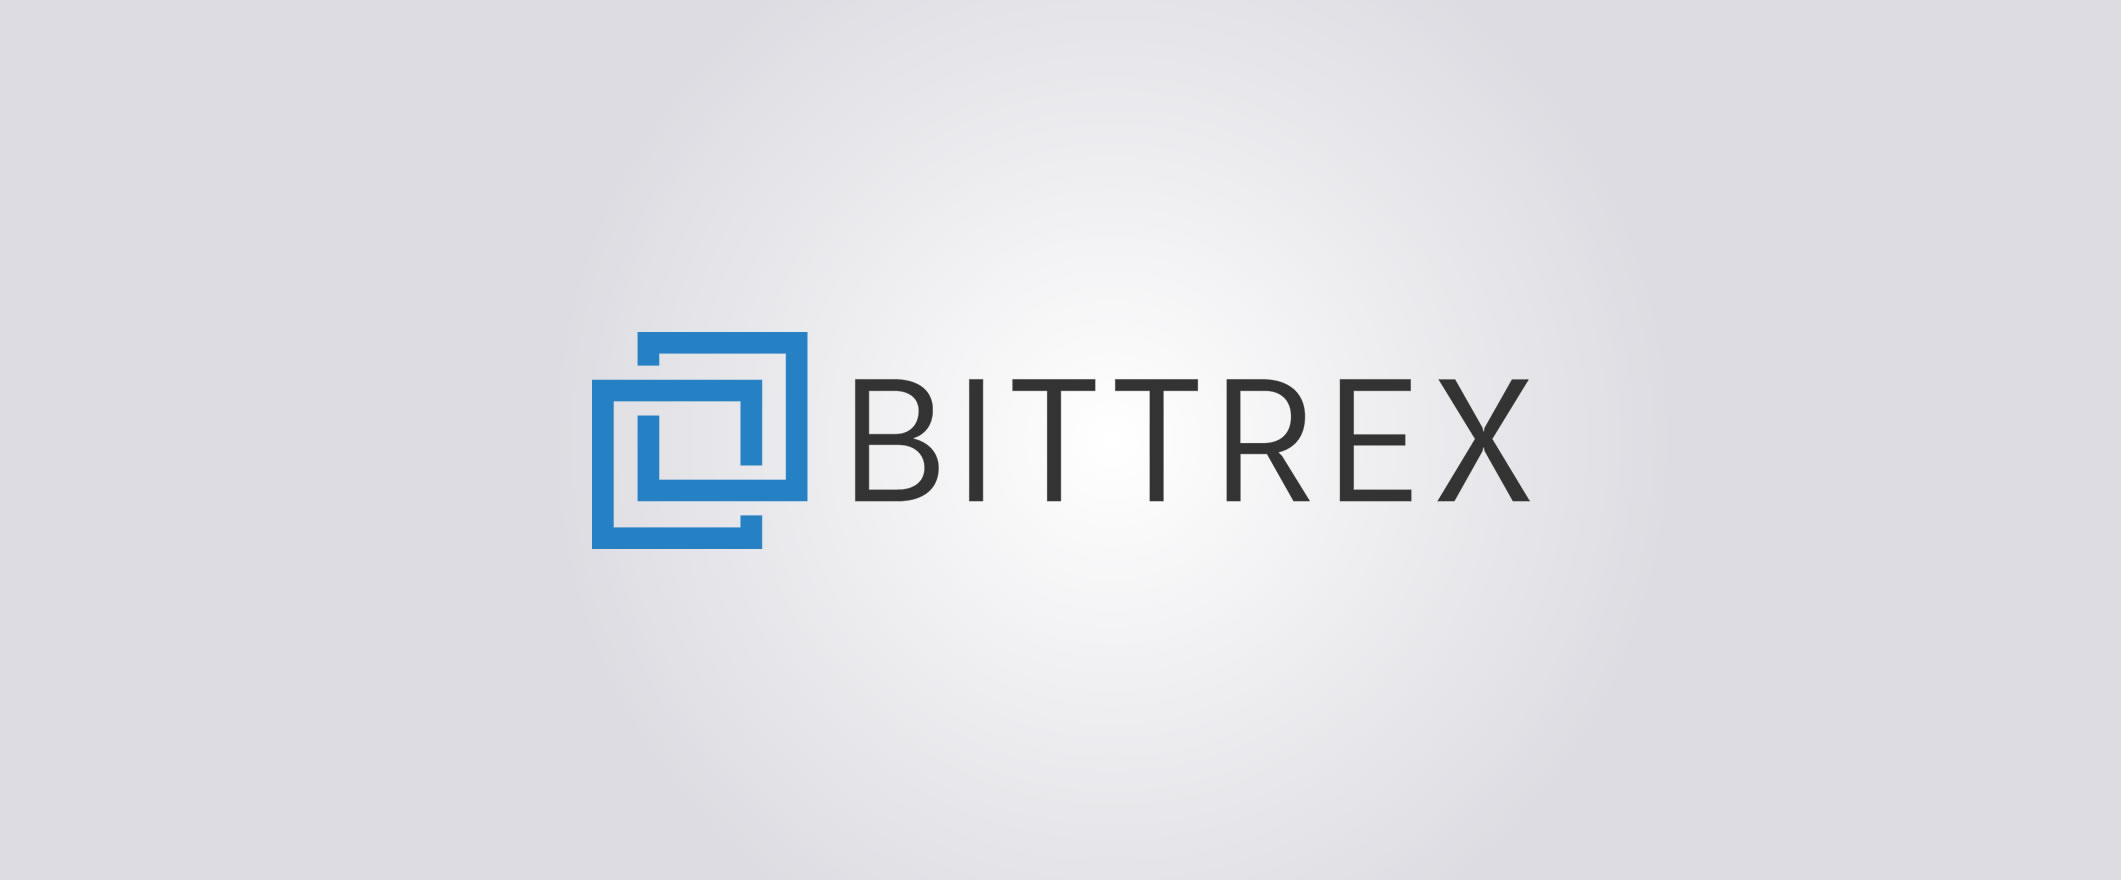 Understanding Bittrex Order Types